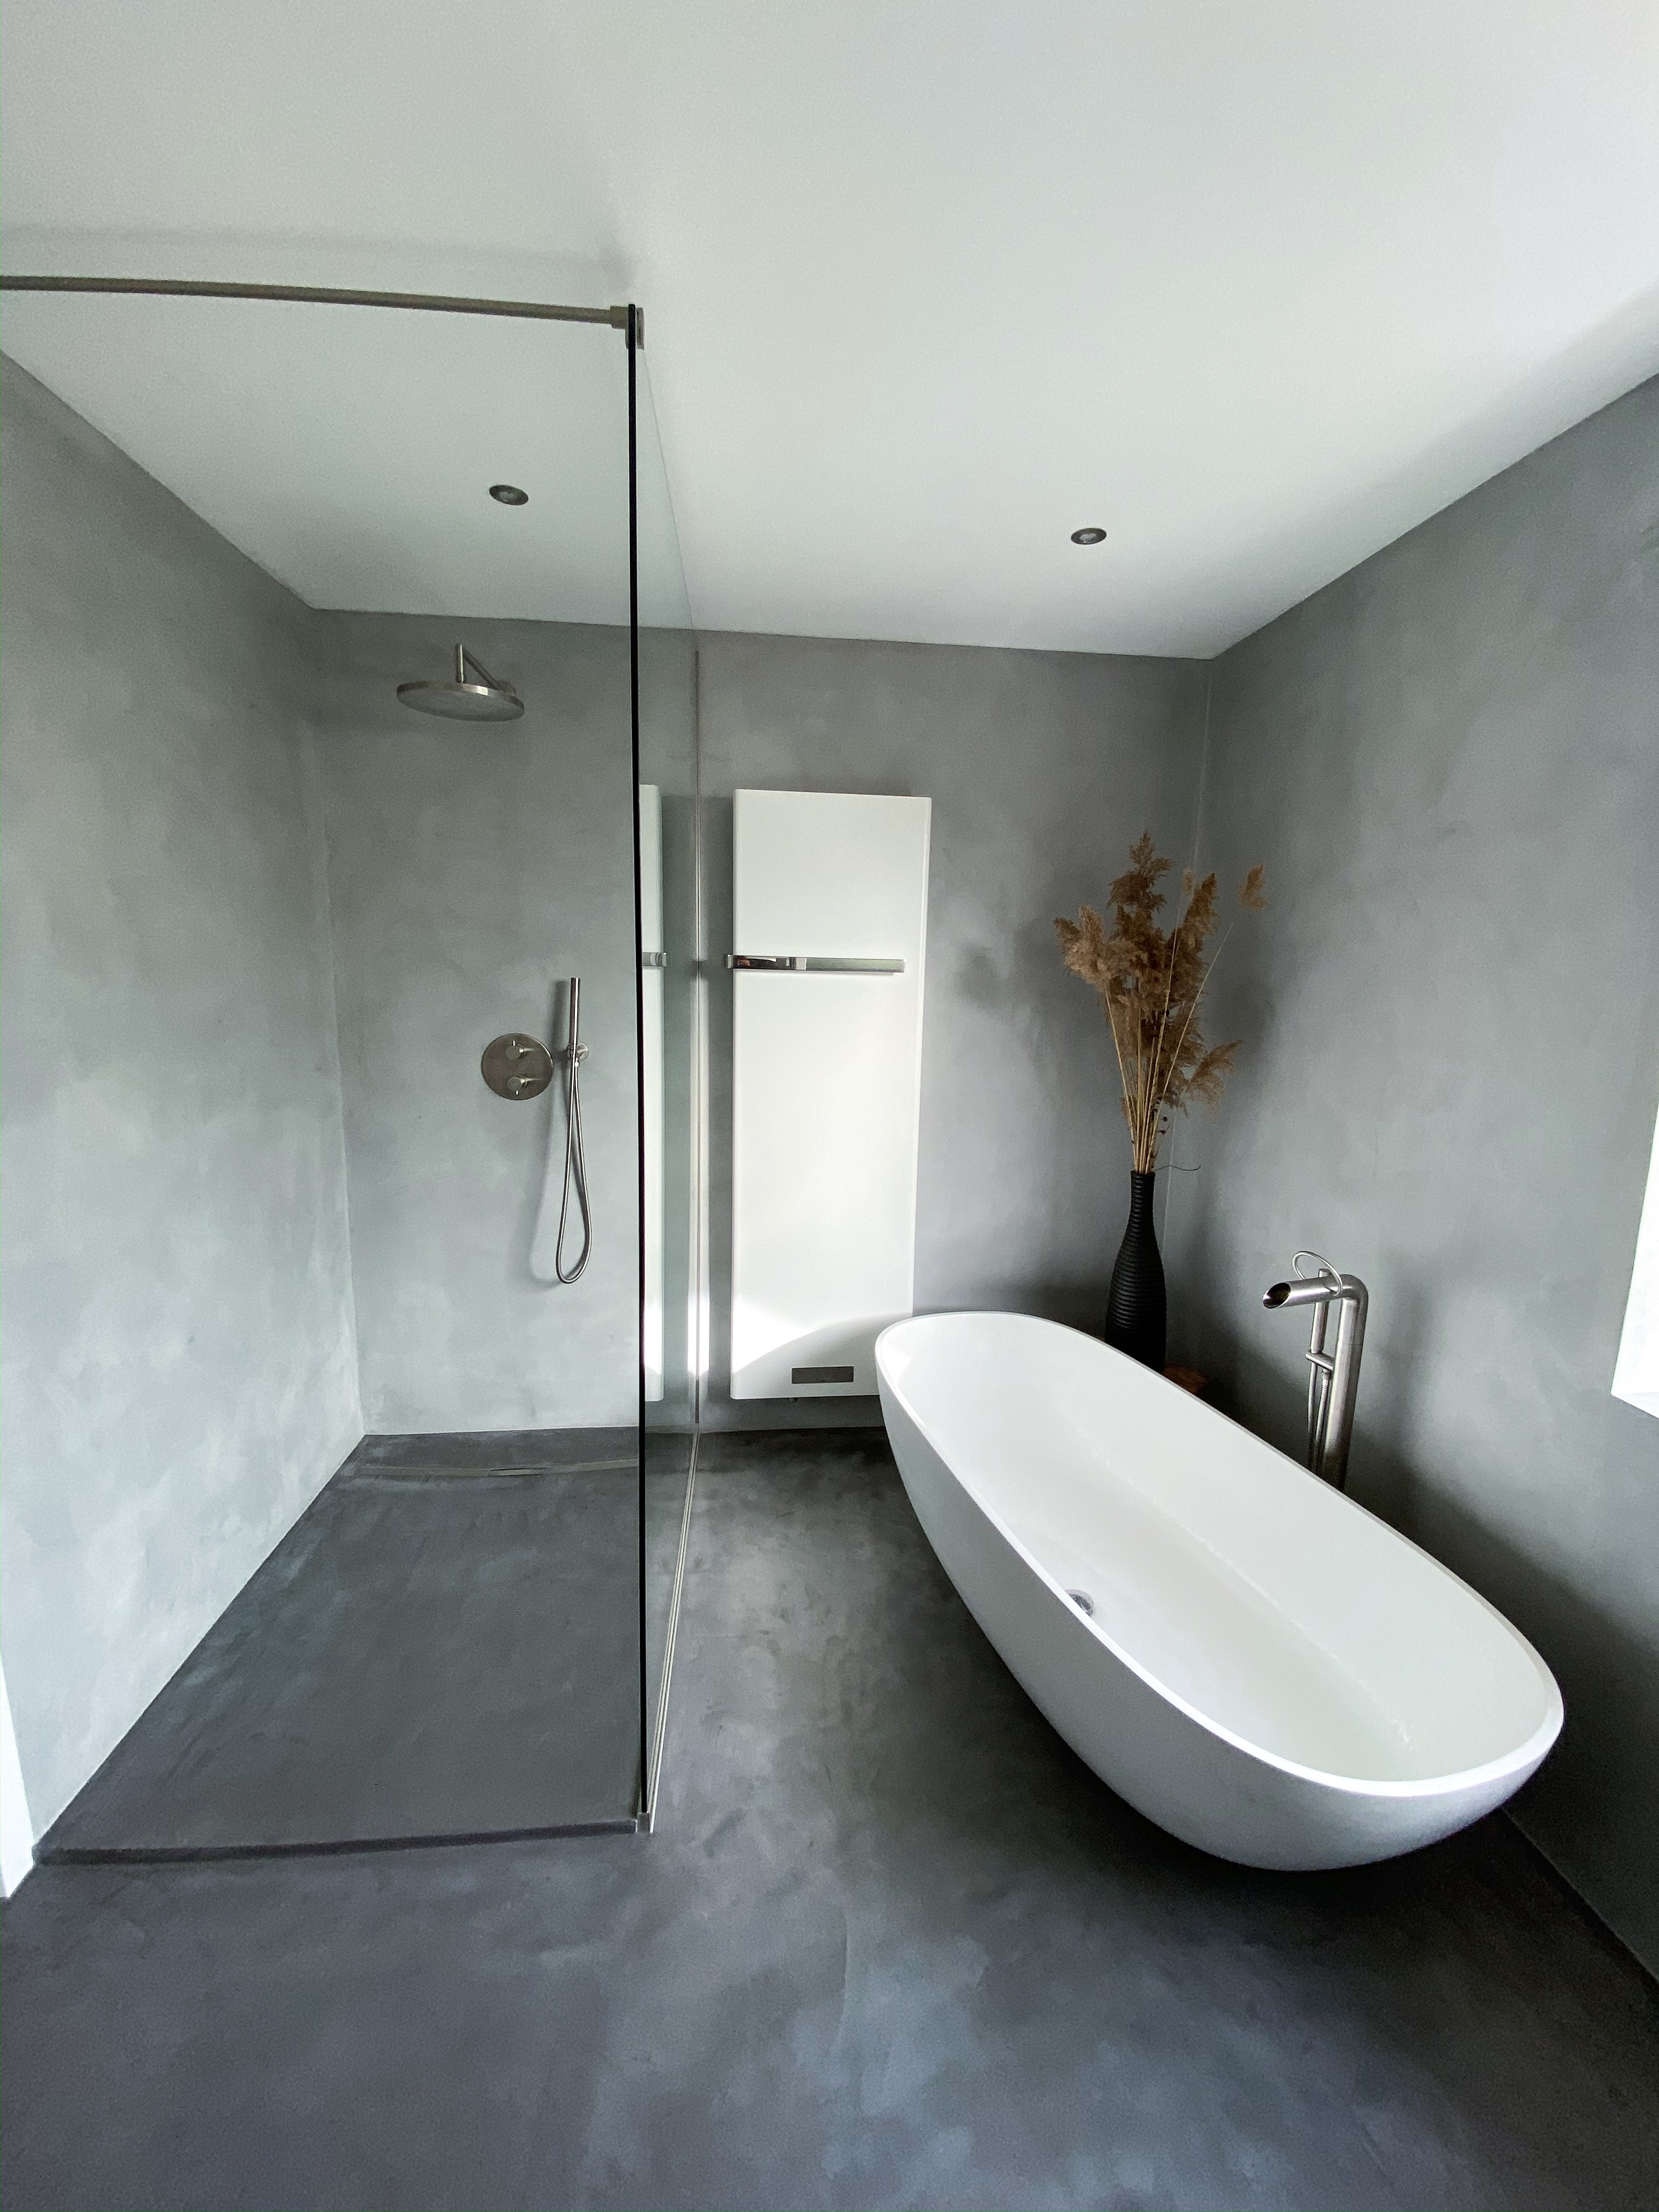 Beton-Cire Beton Optik Badezimmer Beton Style Betonoptik Sanierung Hausbau bauen Betonstyle badsanierung bad